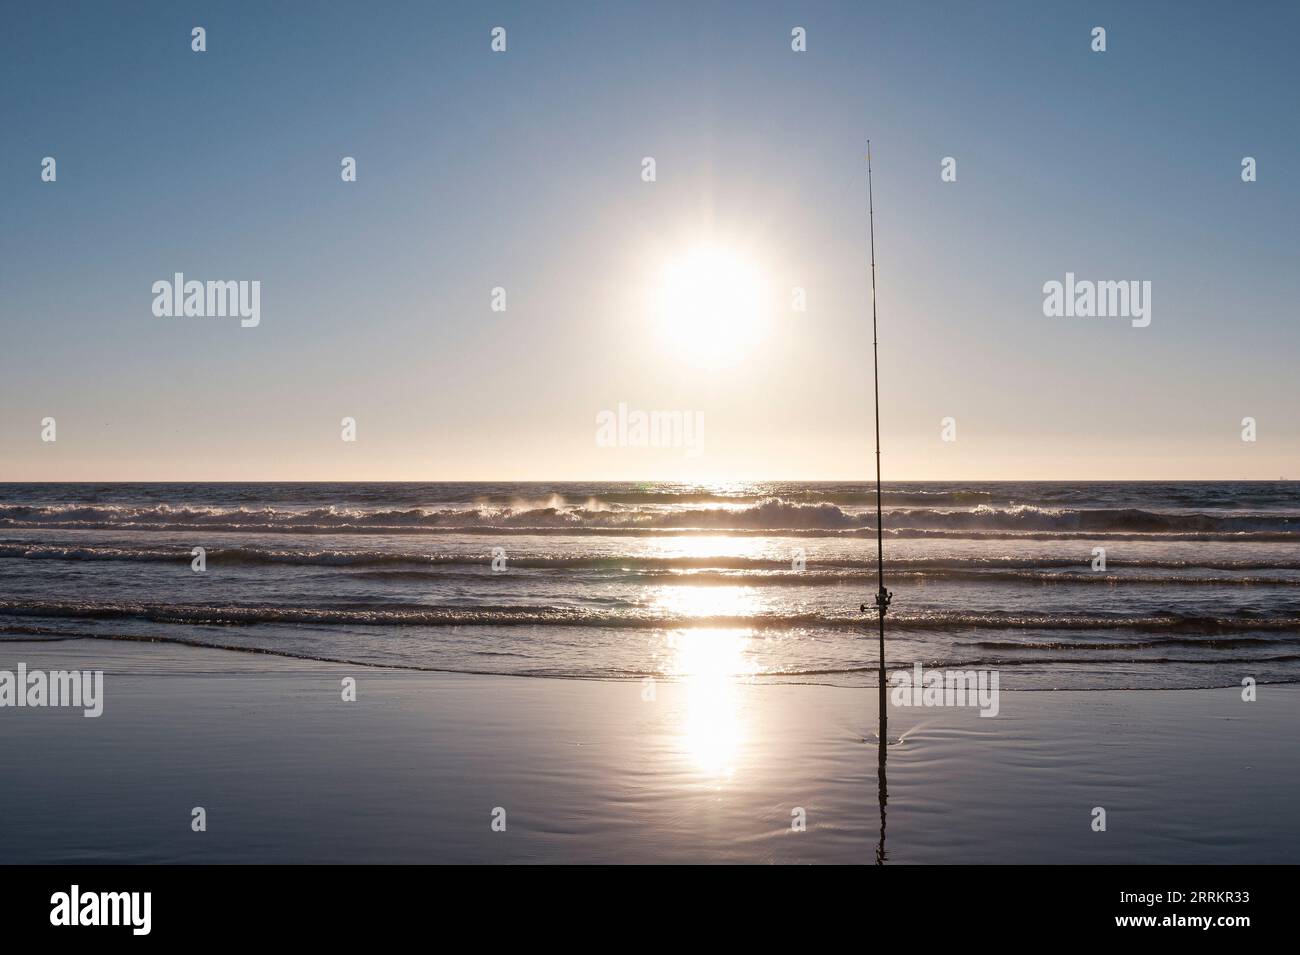 Pêche sur la plage de sable au bord de la mer Banque D'Images